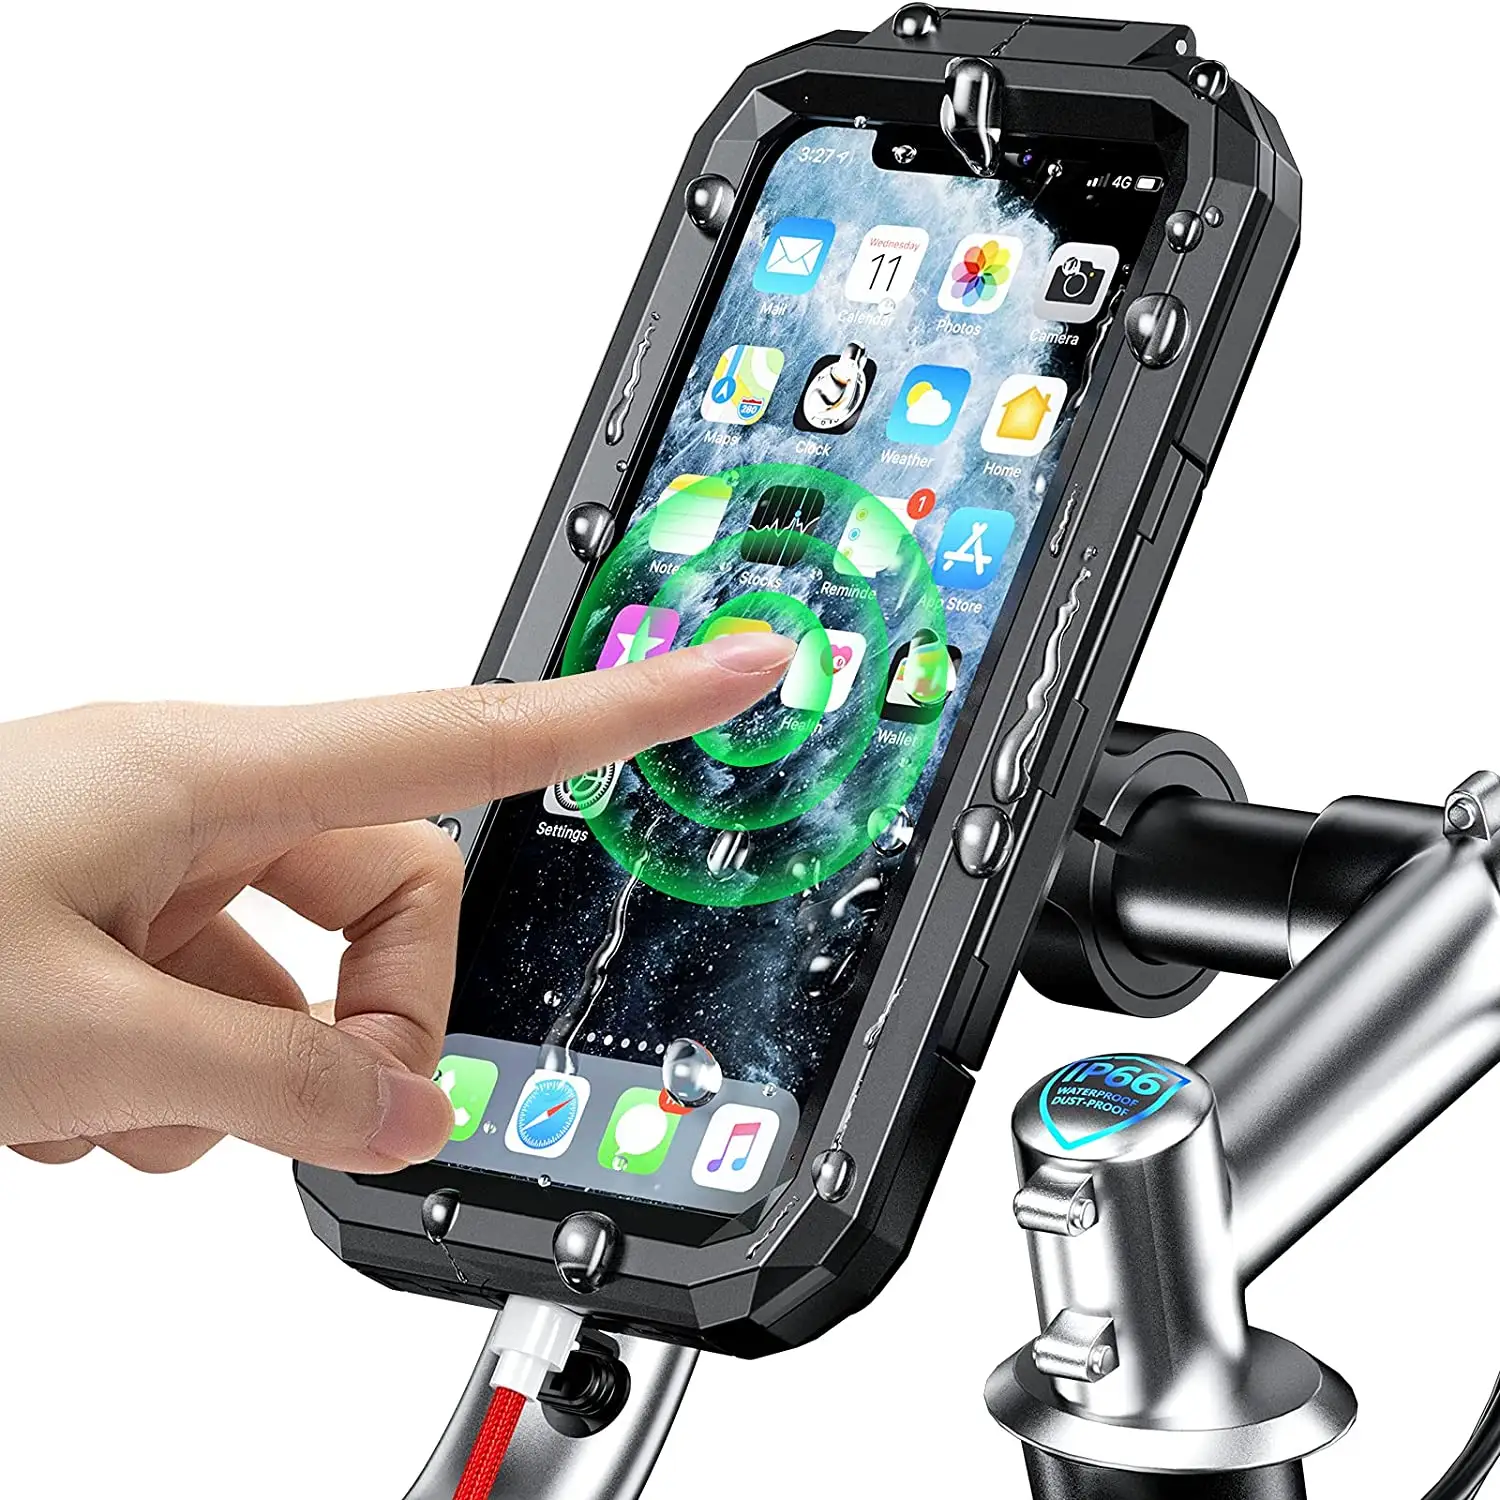 Waterproof Bicycle mobile phone holder 360 Adjustable bike Handlebar Phone Holder Mount Motorcycle Phone Holder Waterproof